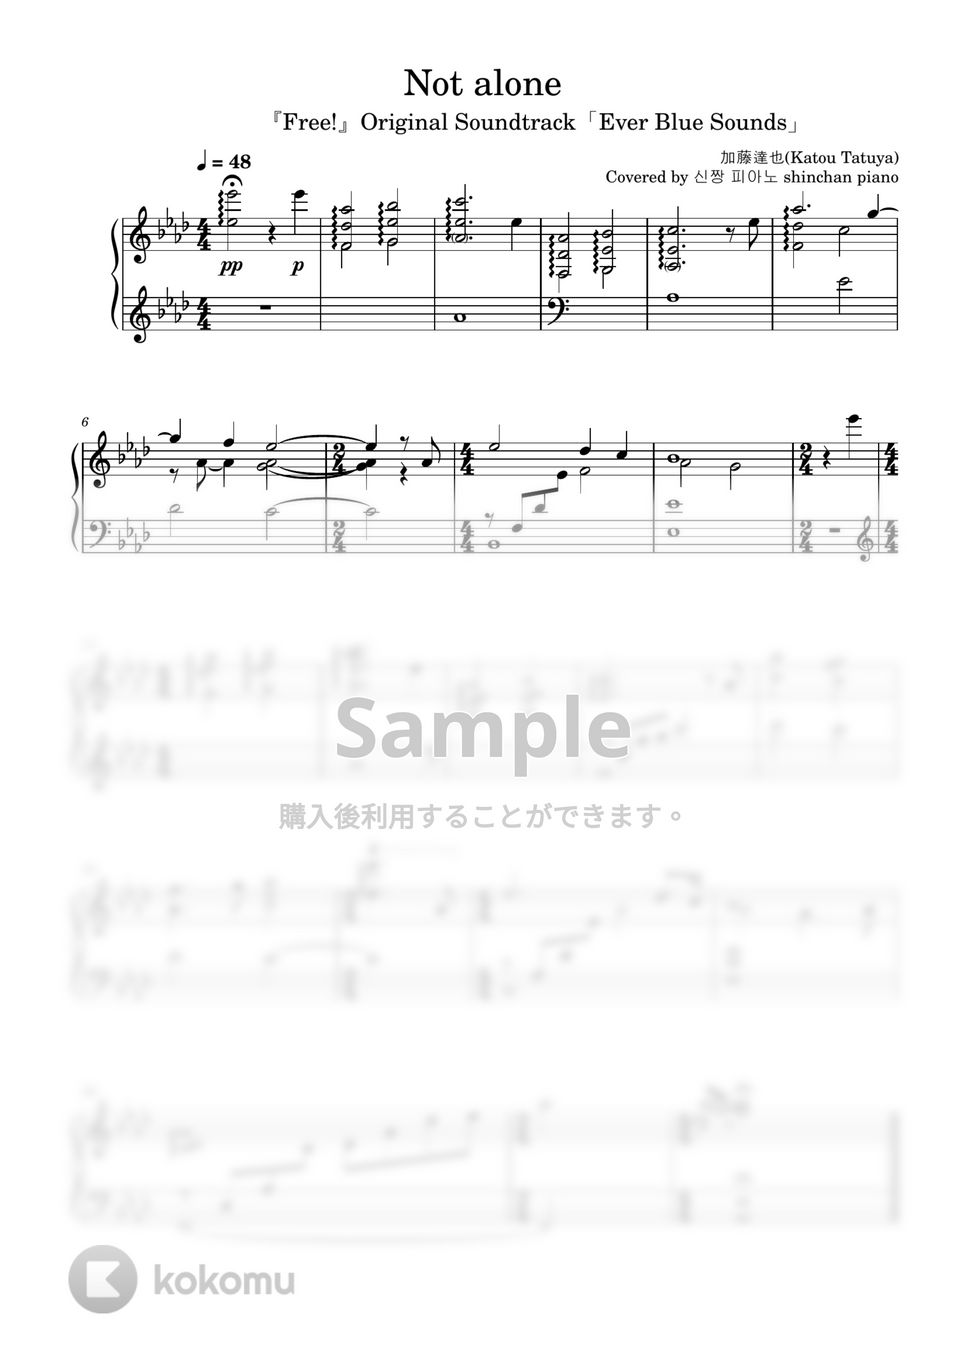 加藤達也 - Not alone (アニメ「フリー！」オリジナルサウンドトラック『Ever Blue Sounds』より) by しんちゃんピアノ